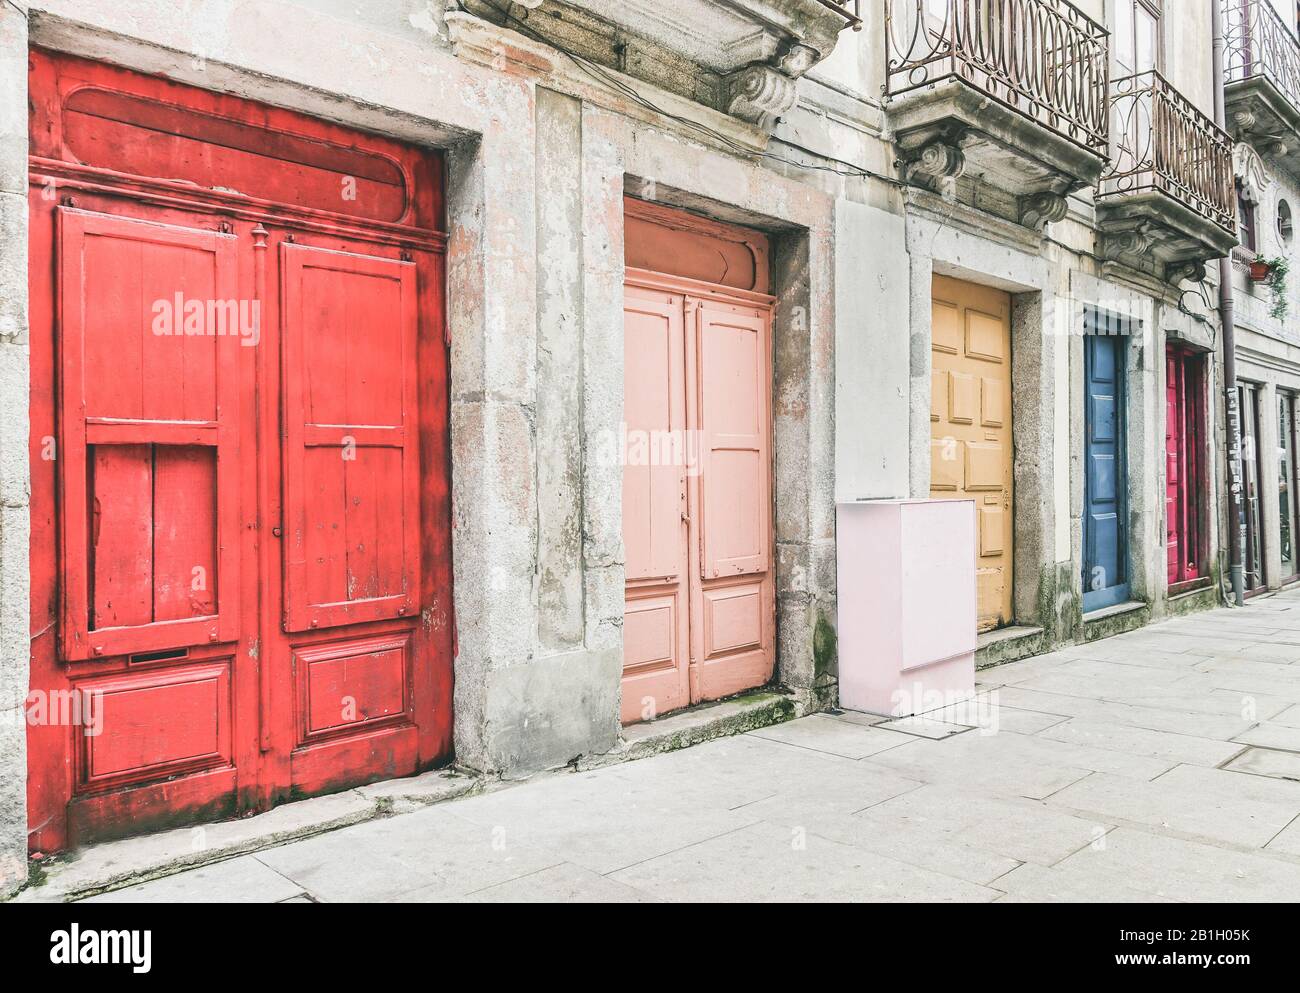 Il centro storico di Porto in Portogallo - Street view of colorful doors - Vintage editing con il focus principale al centro della cornice Foto Stock